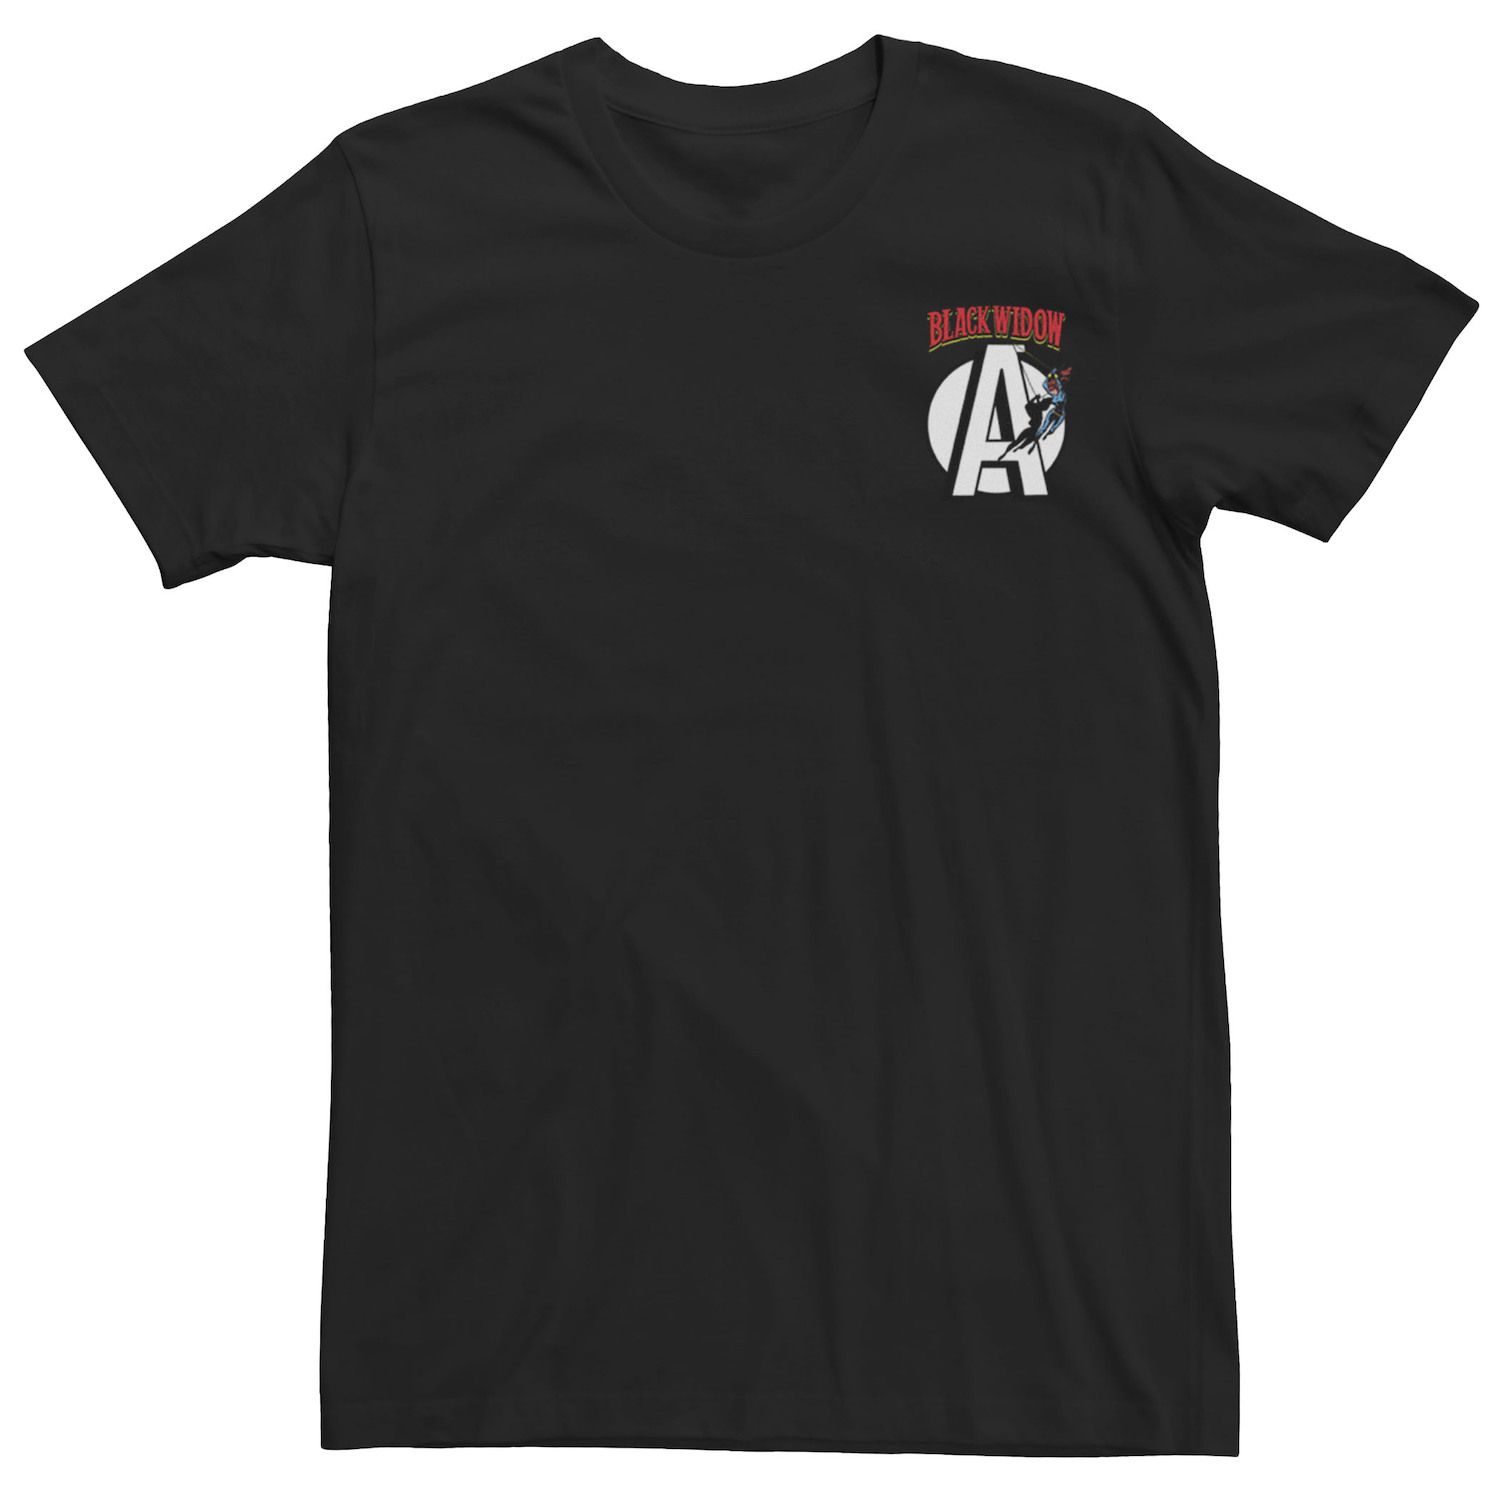 Мужская футболка с логотипом и карманами Avengers Black Widow Marvel цена и фото